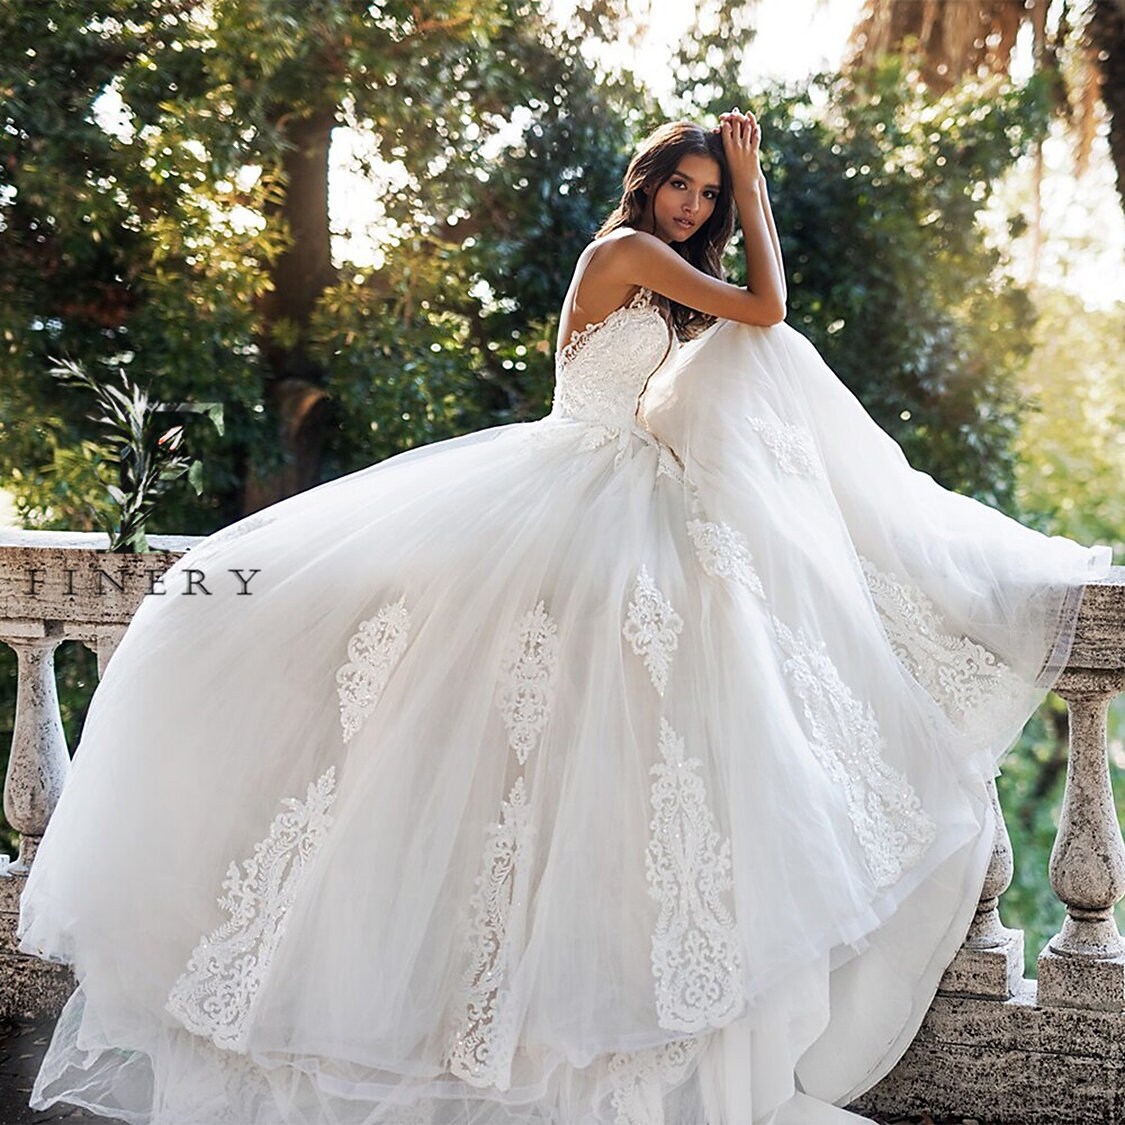 Luxury Lace Wedding Dress White Ivory Lace Wedding Dress | Etsy